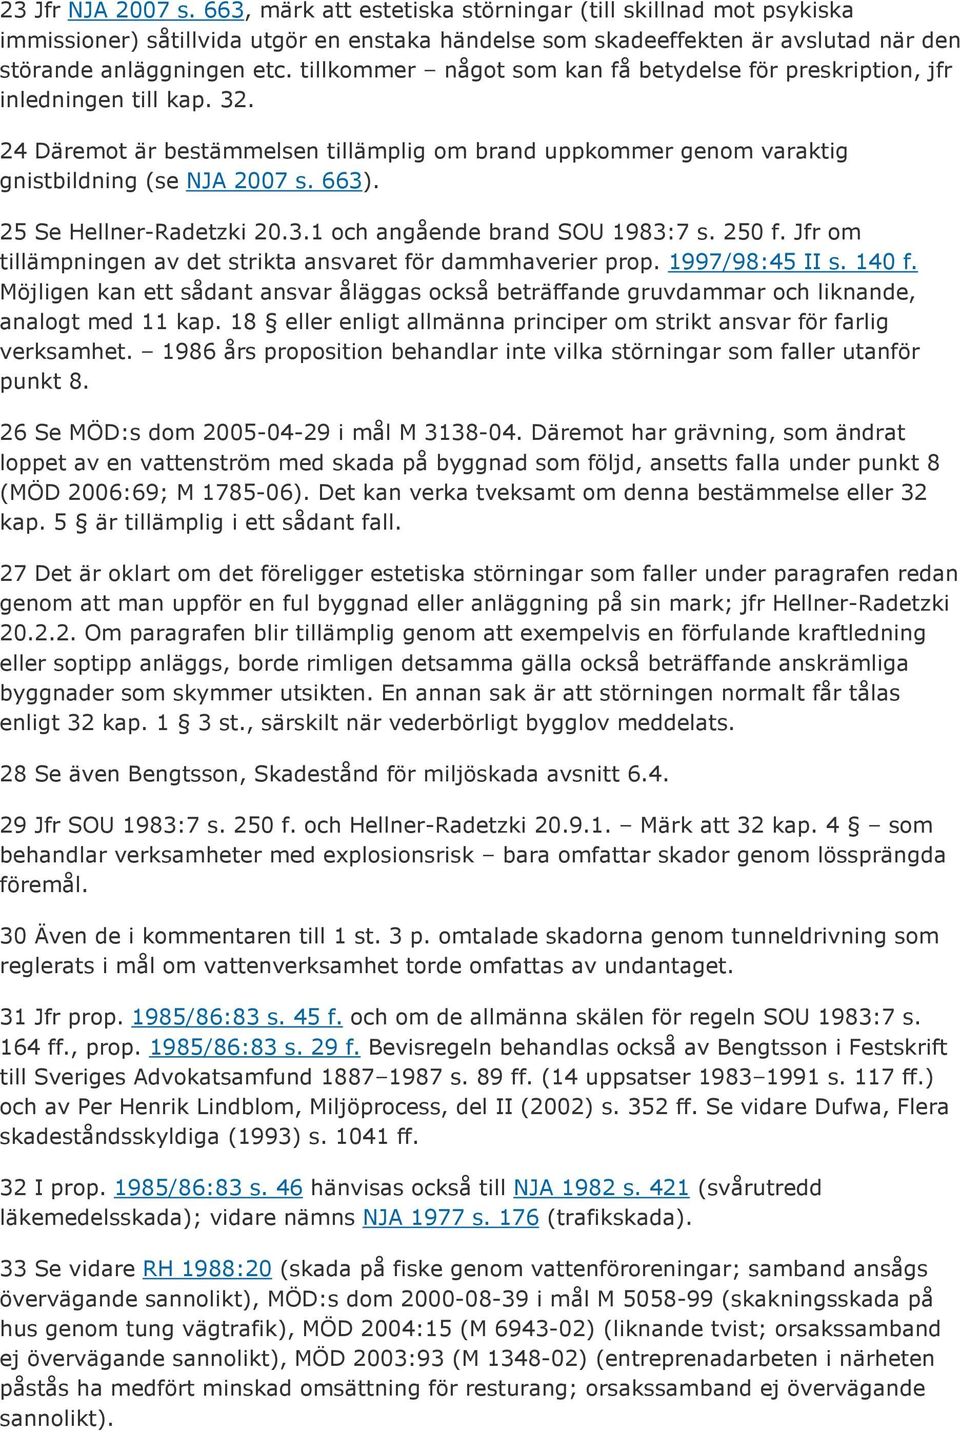 25 Se Hellner-Radetzki 20.3.1 och angående brand SOU 1983:7 s. 250 f. Jfr om tillämpningen av det strikta ansvaret för dammhaverier prop. 1997/98:45 II s. 140 f.